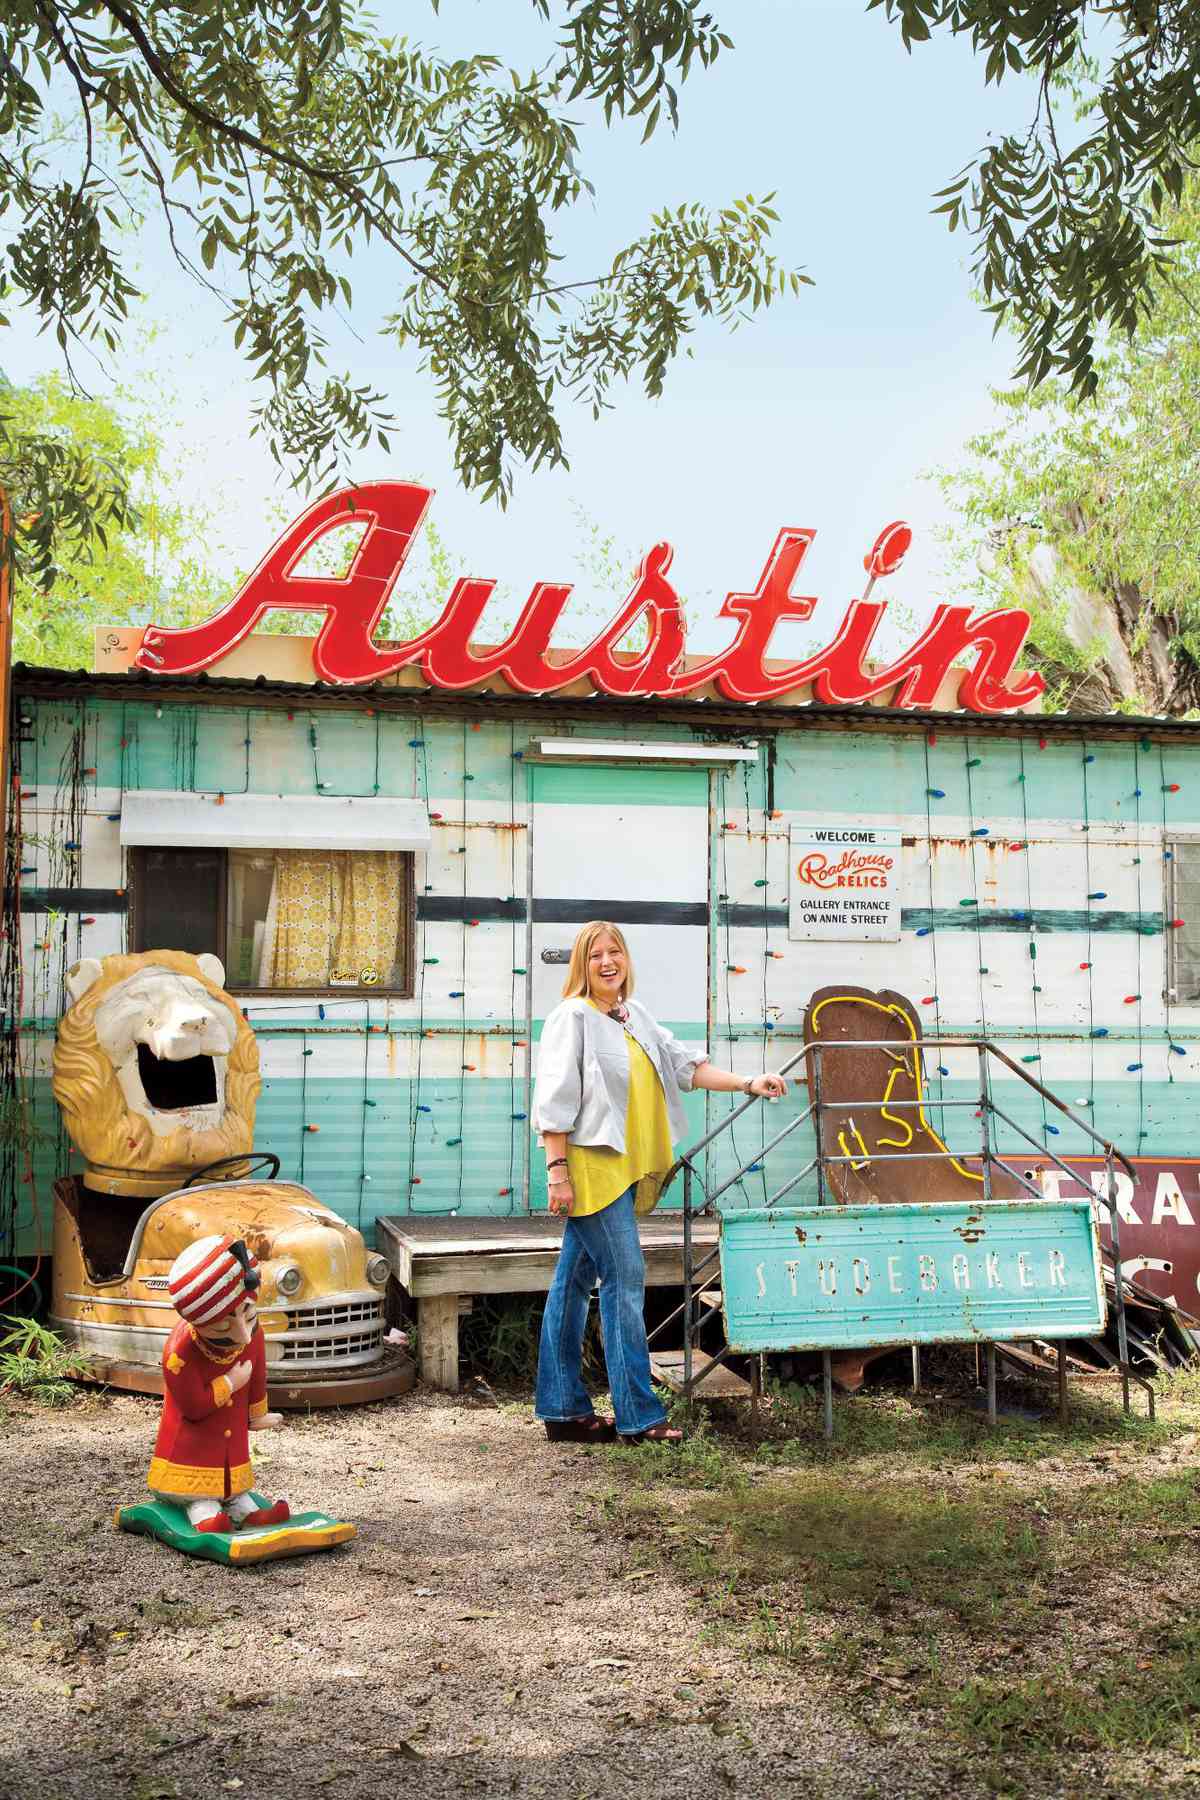 Travel to Austin: Airstream Cuisine